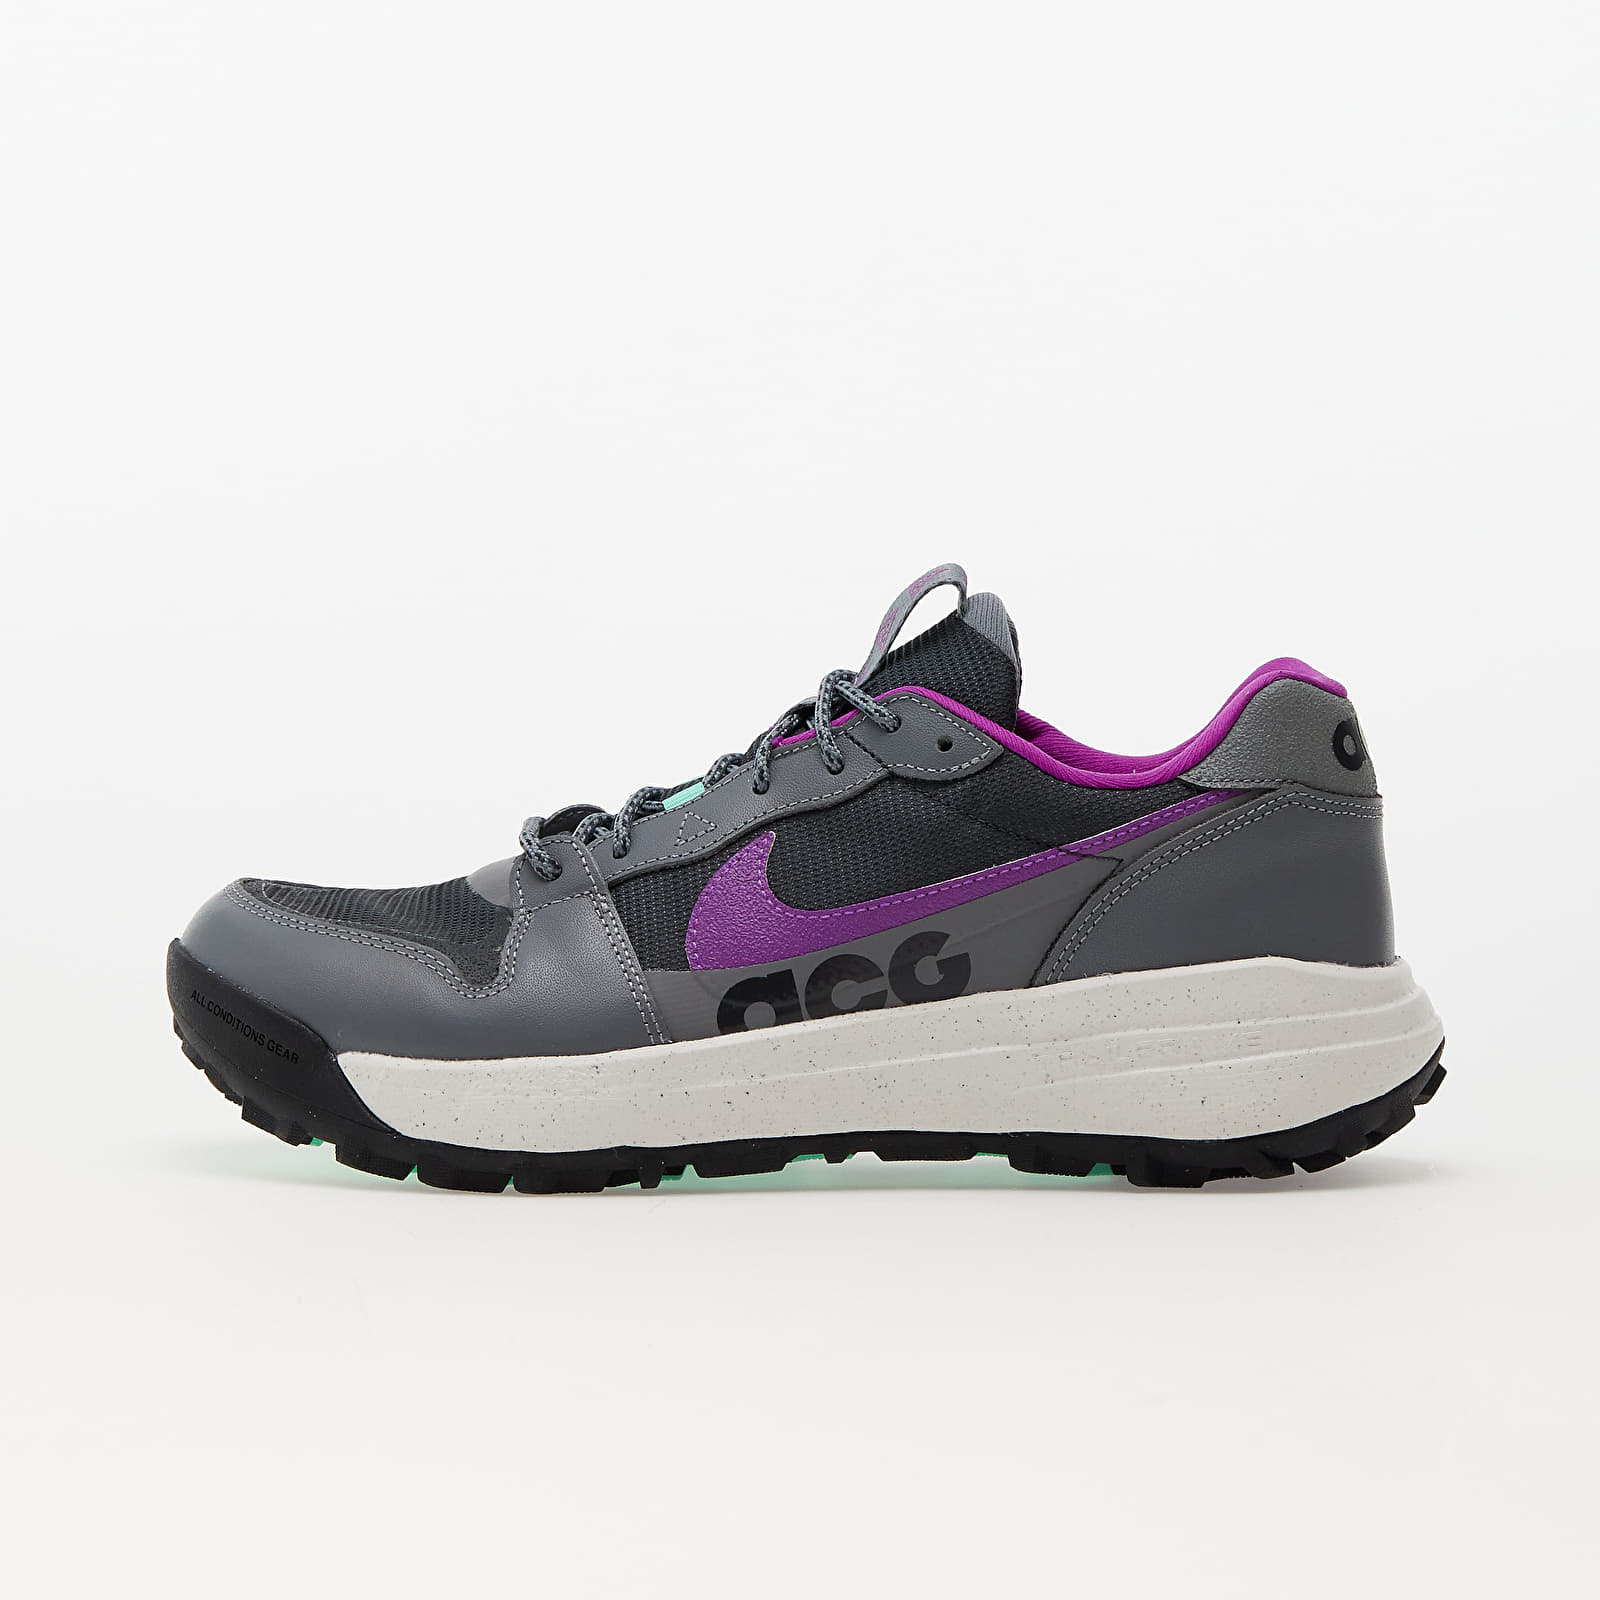 Încălțăminte și sneakerși pentru bărbați Nike ACG Lowcate Smoke Grey/ Dk Smoke Grey-Vivid Purple